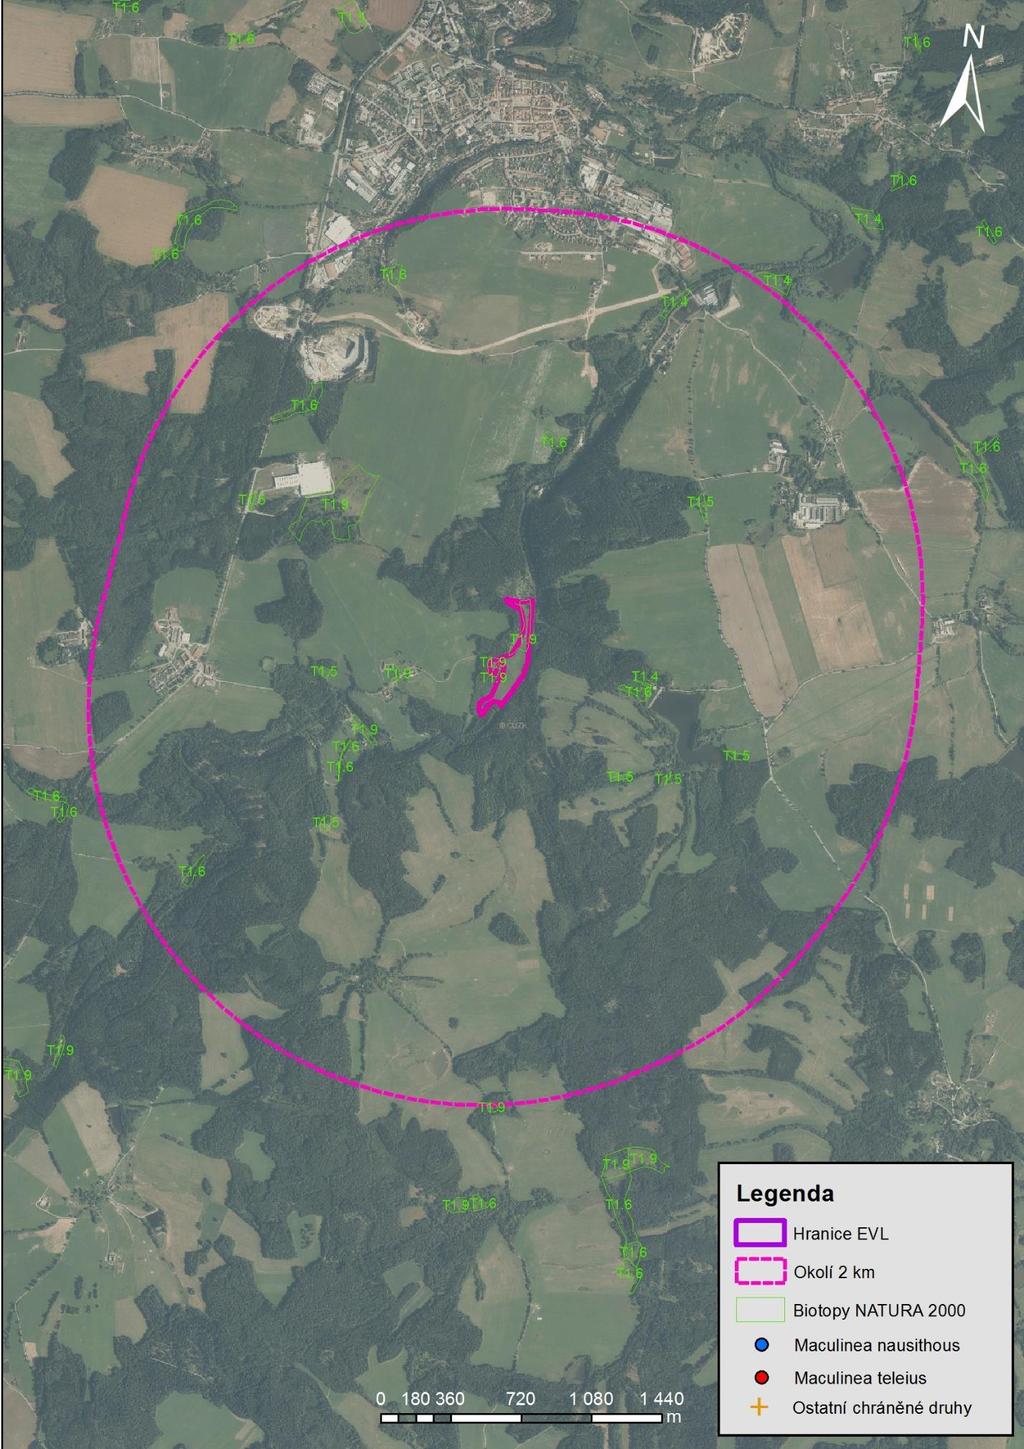 Mapa 19 Potenciálně vhodná lokalita, možná součást EVL Horní Malše a okolí 2 km.